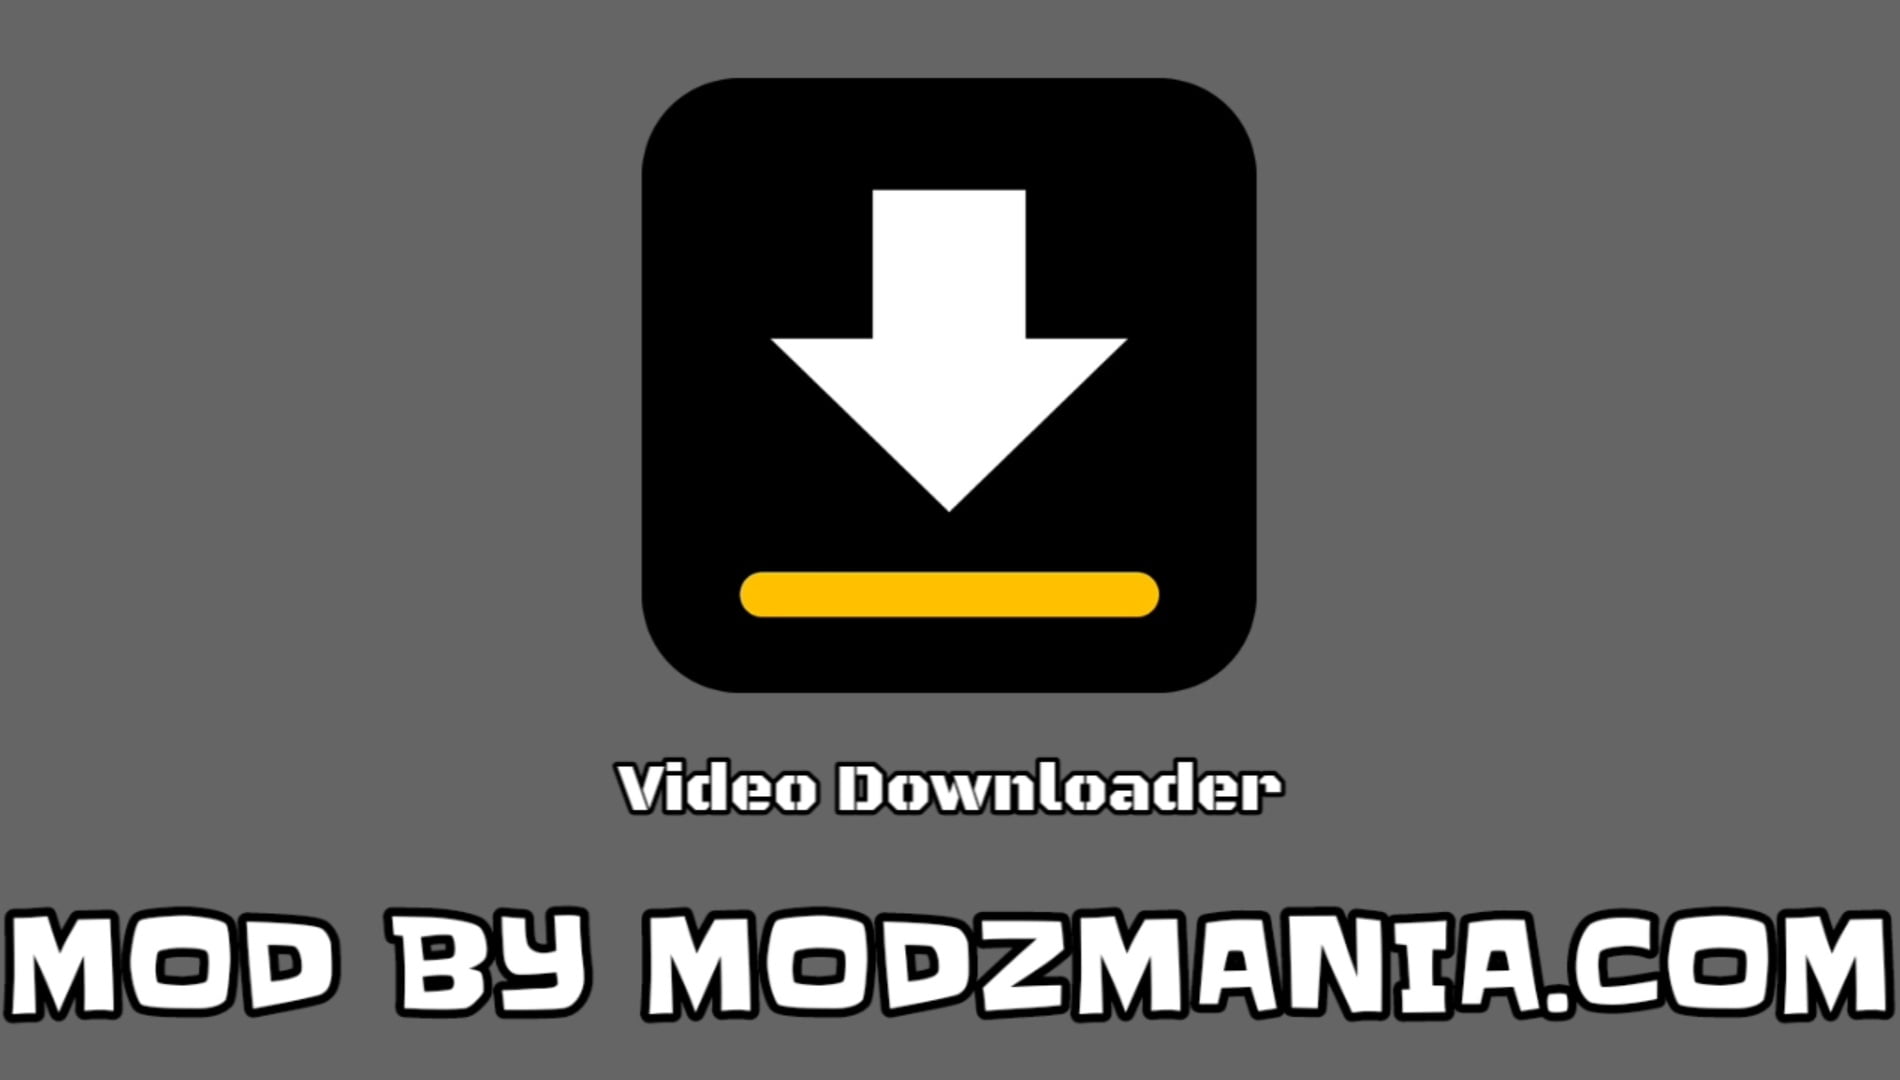 Video Downloader Mod Apk